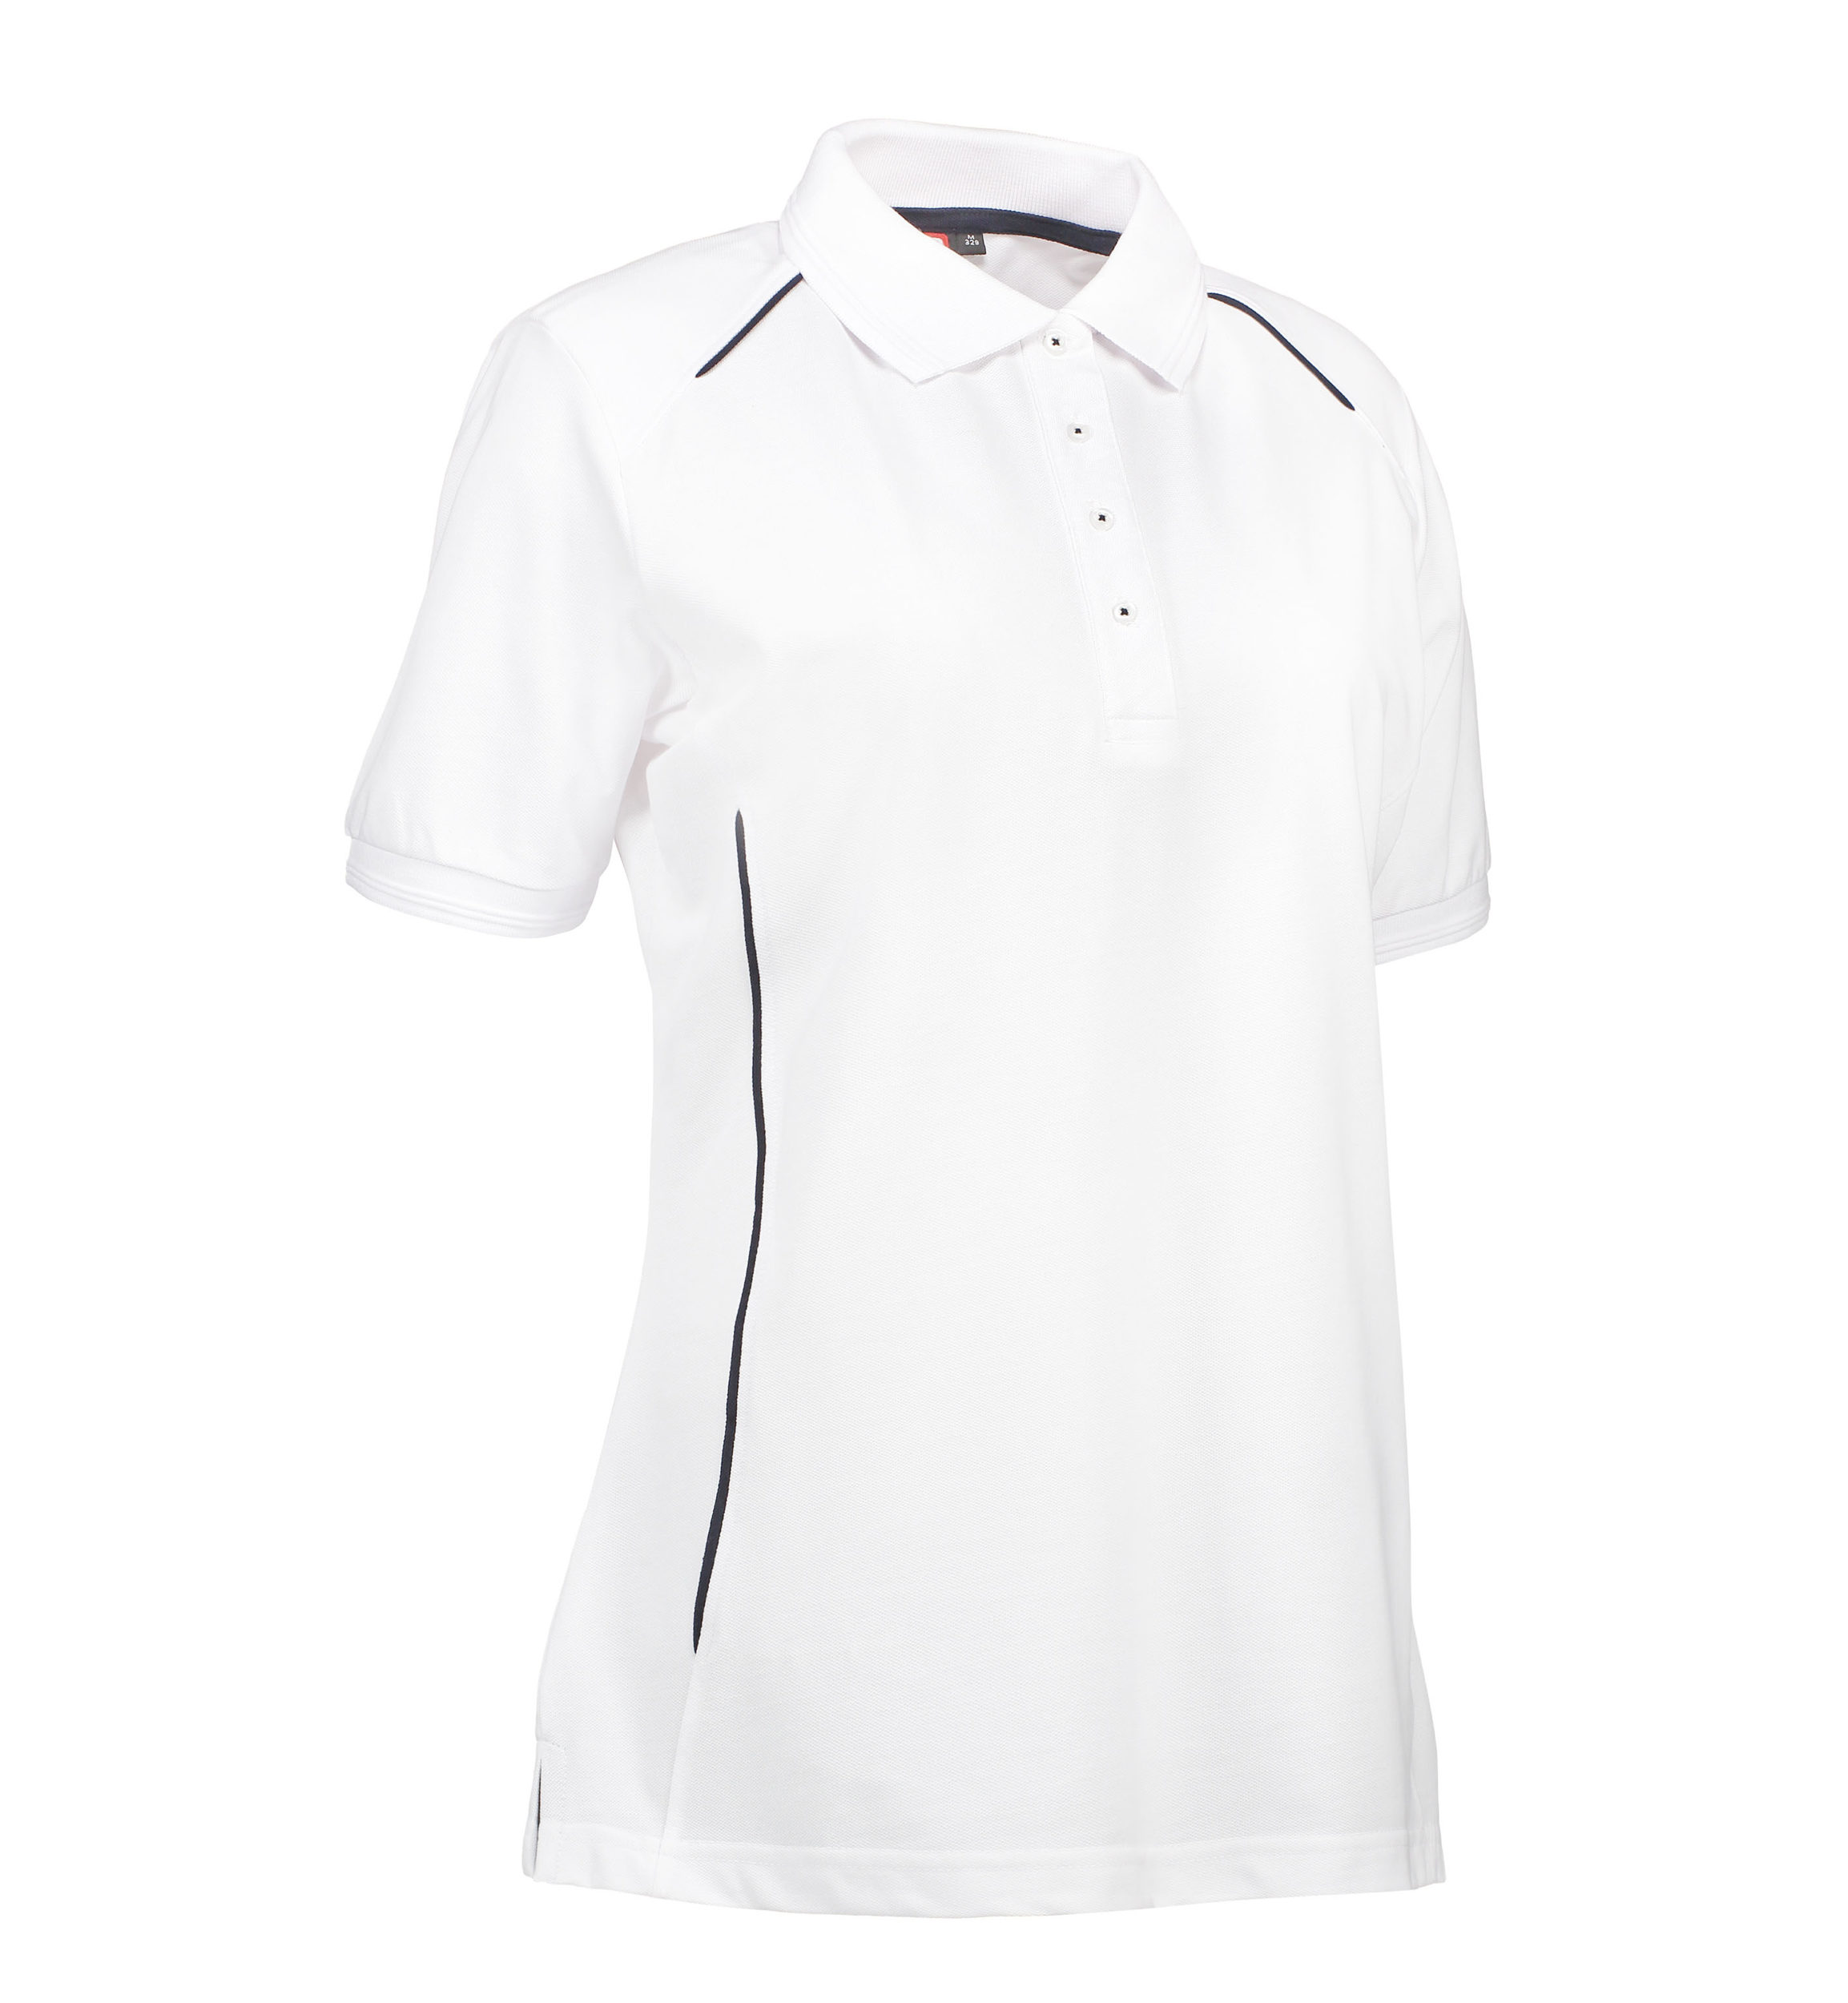 Se Slidstærk polo t-shirt i hvid til damer - XL hos Sygeplejebutikken.dk